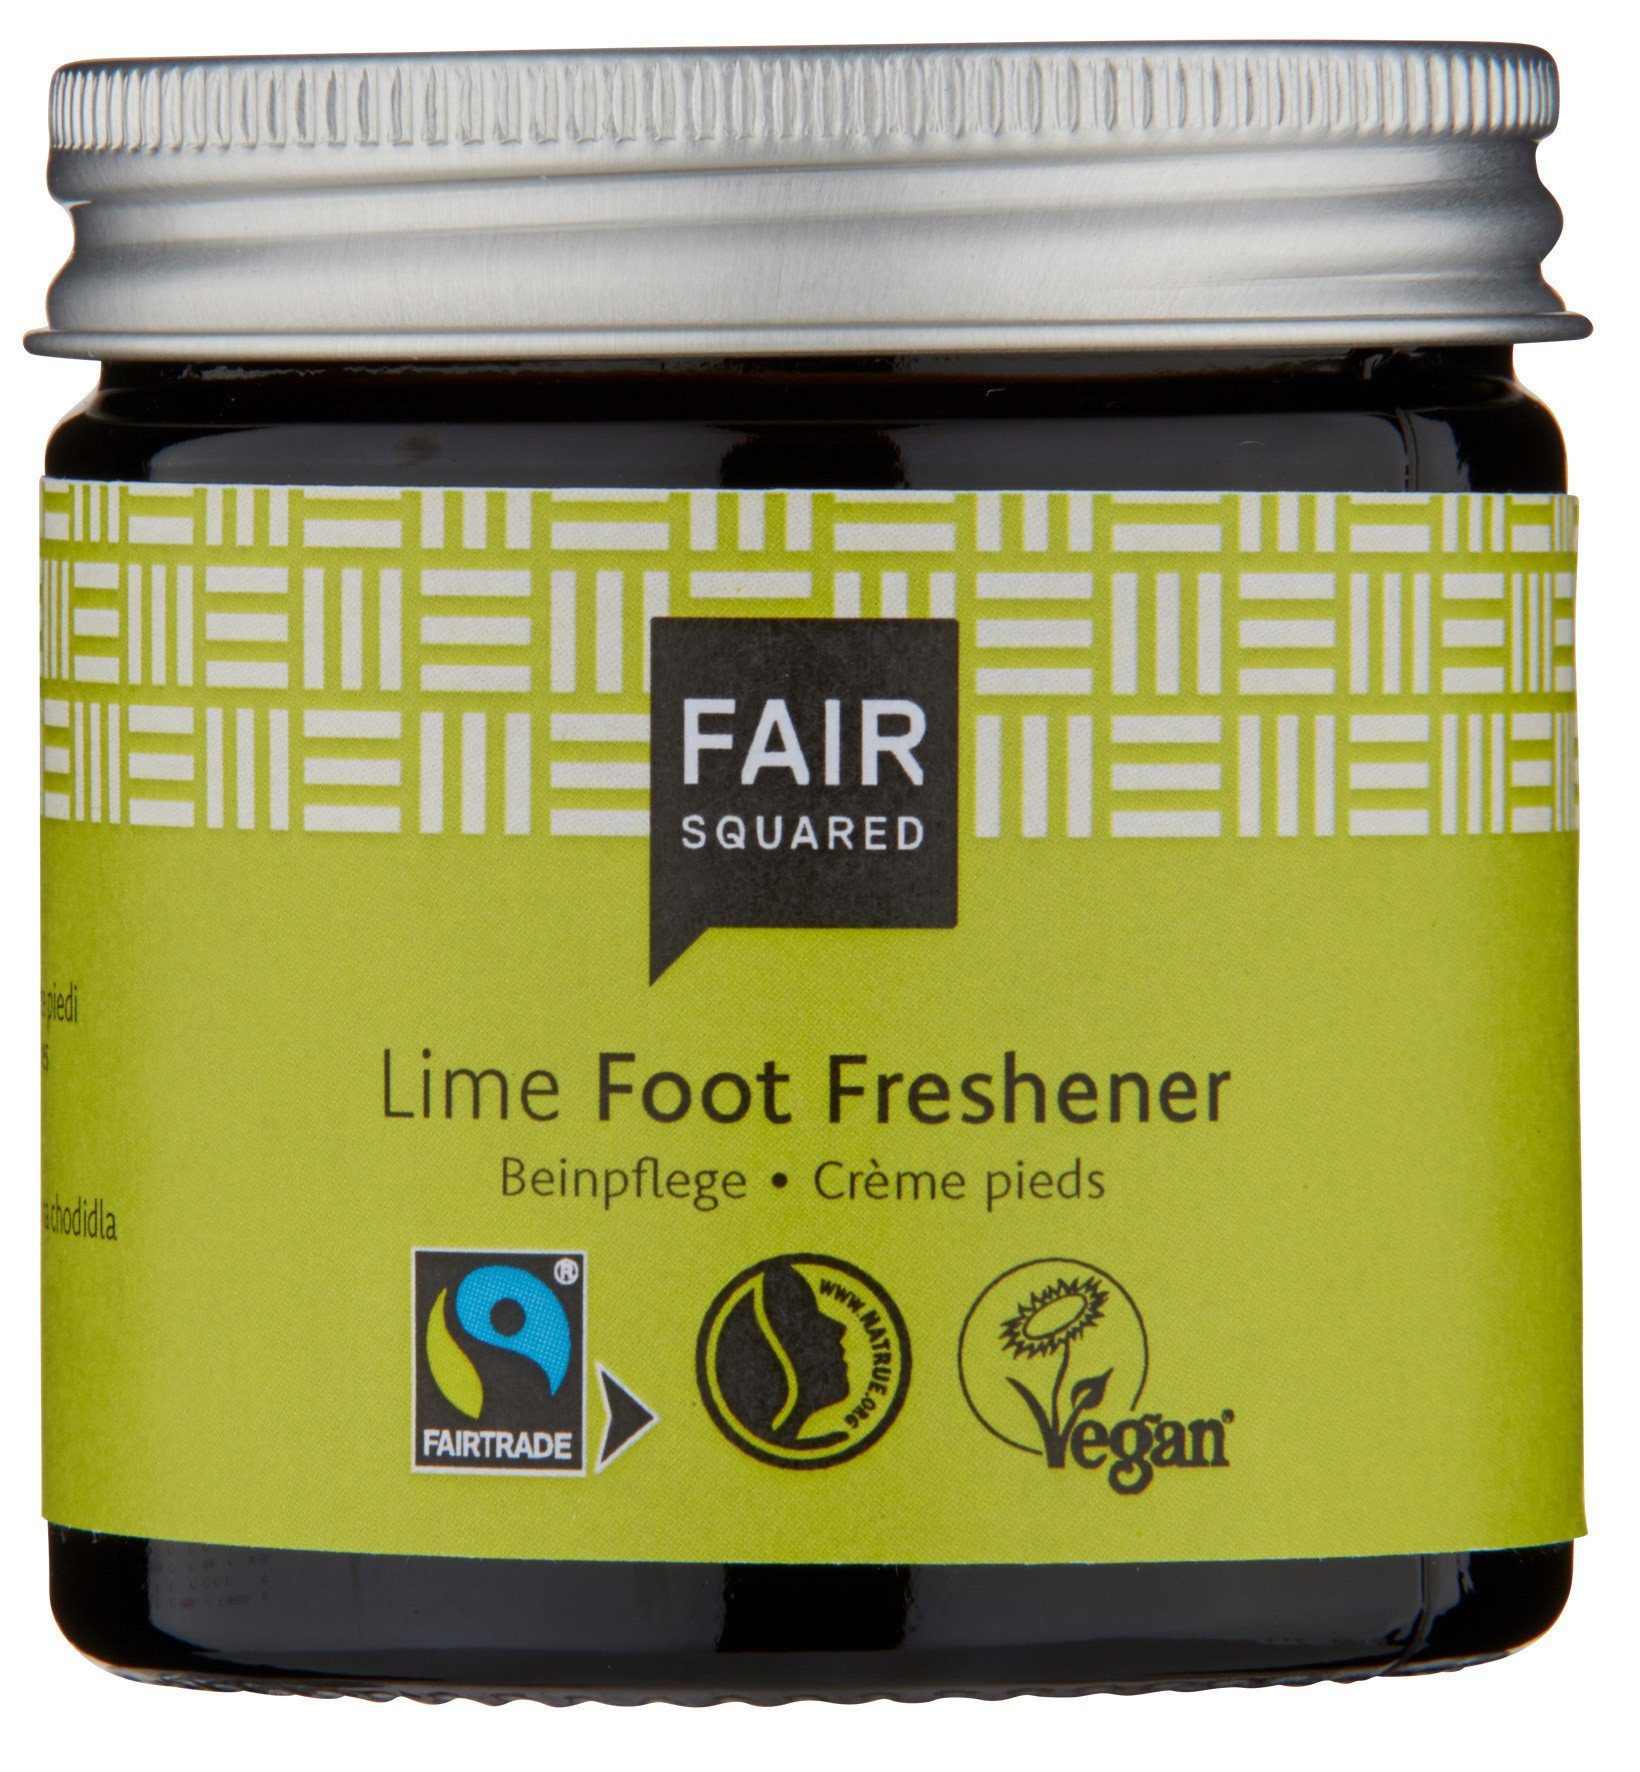 Fair Squared Fußlotion FAIR SQUARED erfrischende Fußpflege mit Limette 50 ml Tiegel, 1-tlg., Pflege für erschöpfte Füße